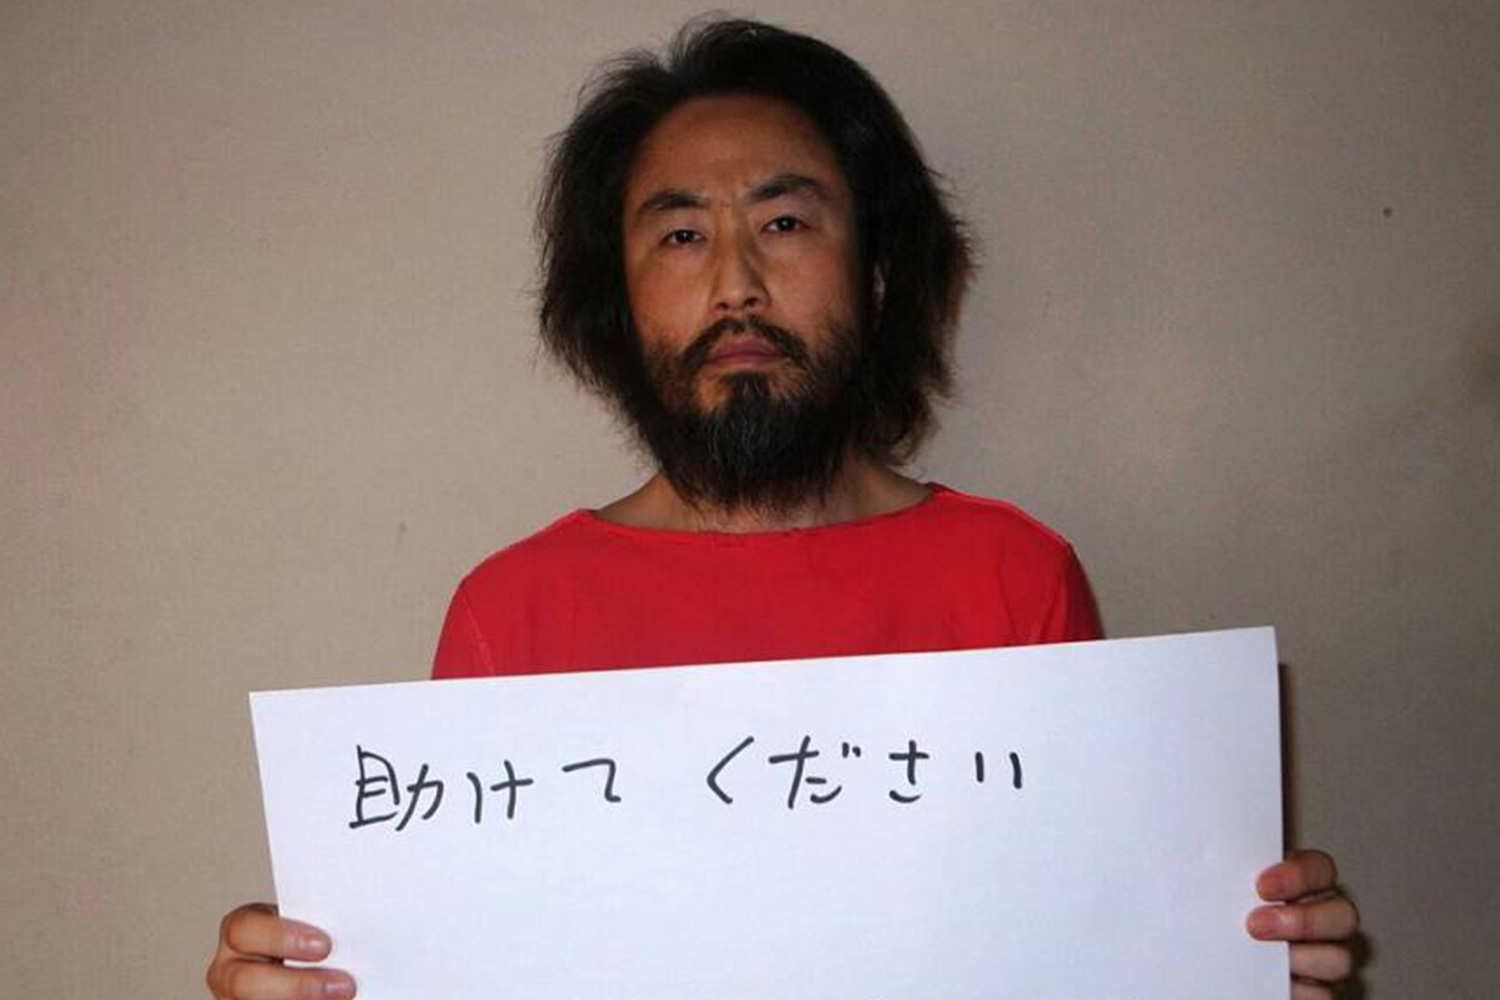 Un periodista japonés secuestrado en Siria da pruebas de vida y hace una dramática petición